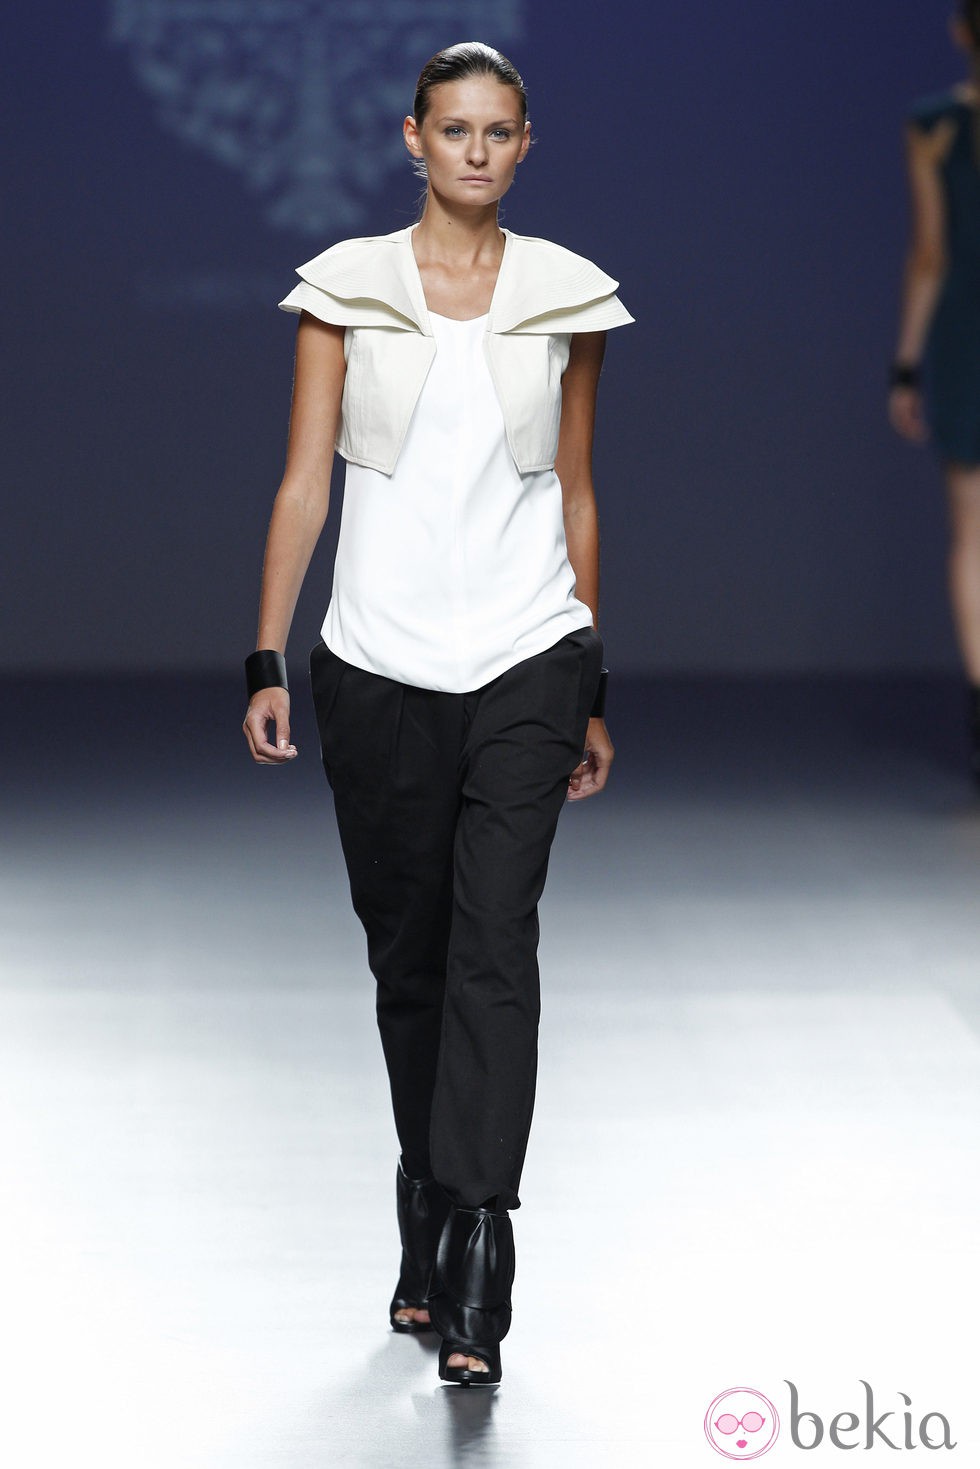 Look de la colección primavera/verano 2014 de Lorena Saravia en el EGO Madrid Fashion Week